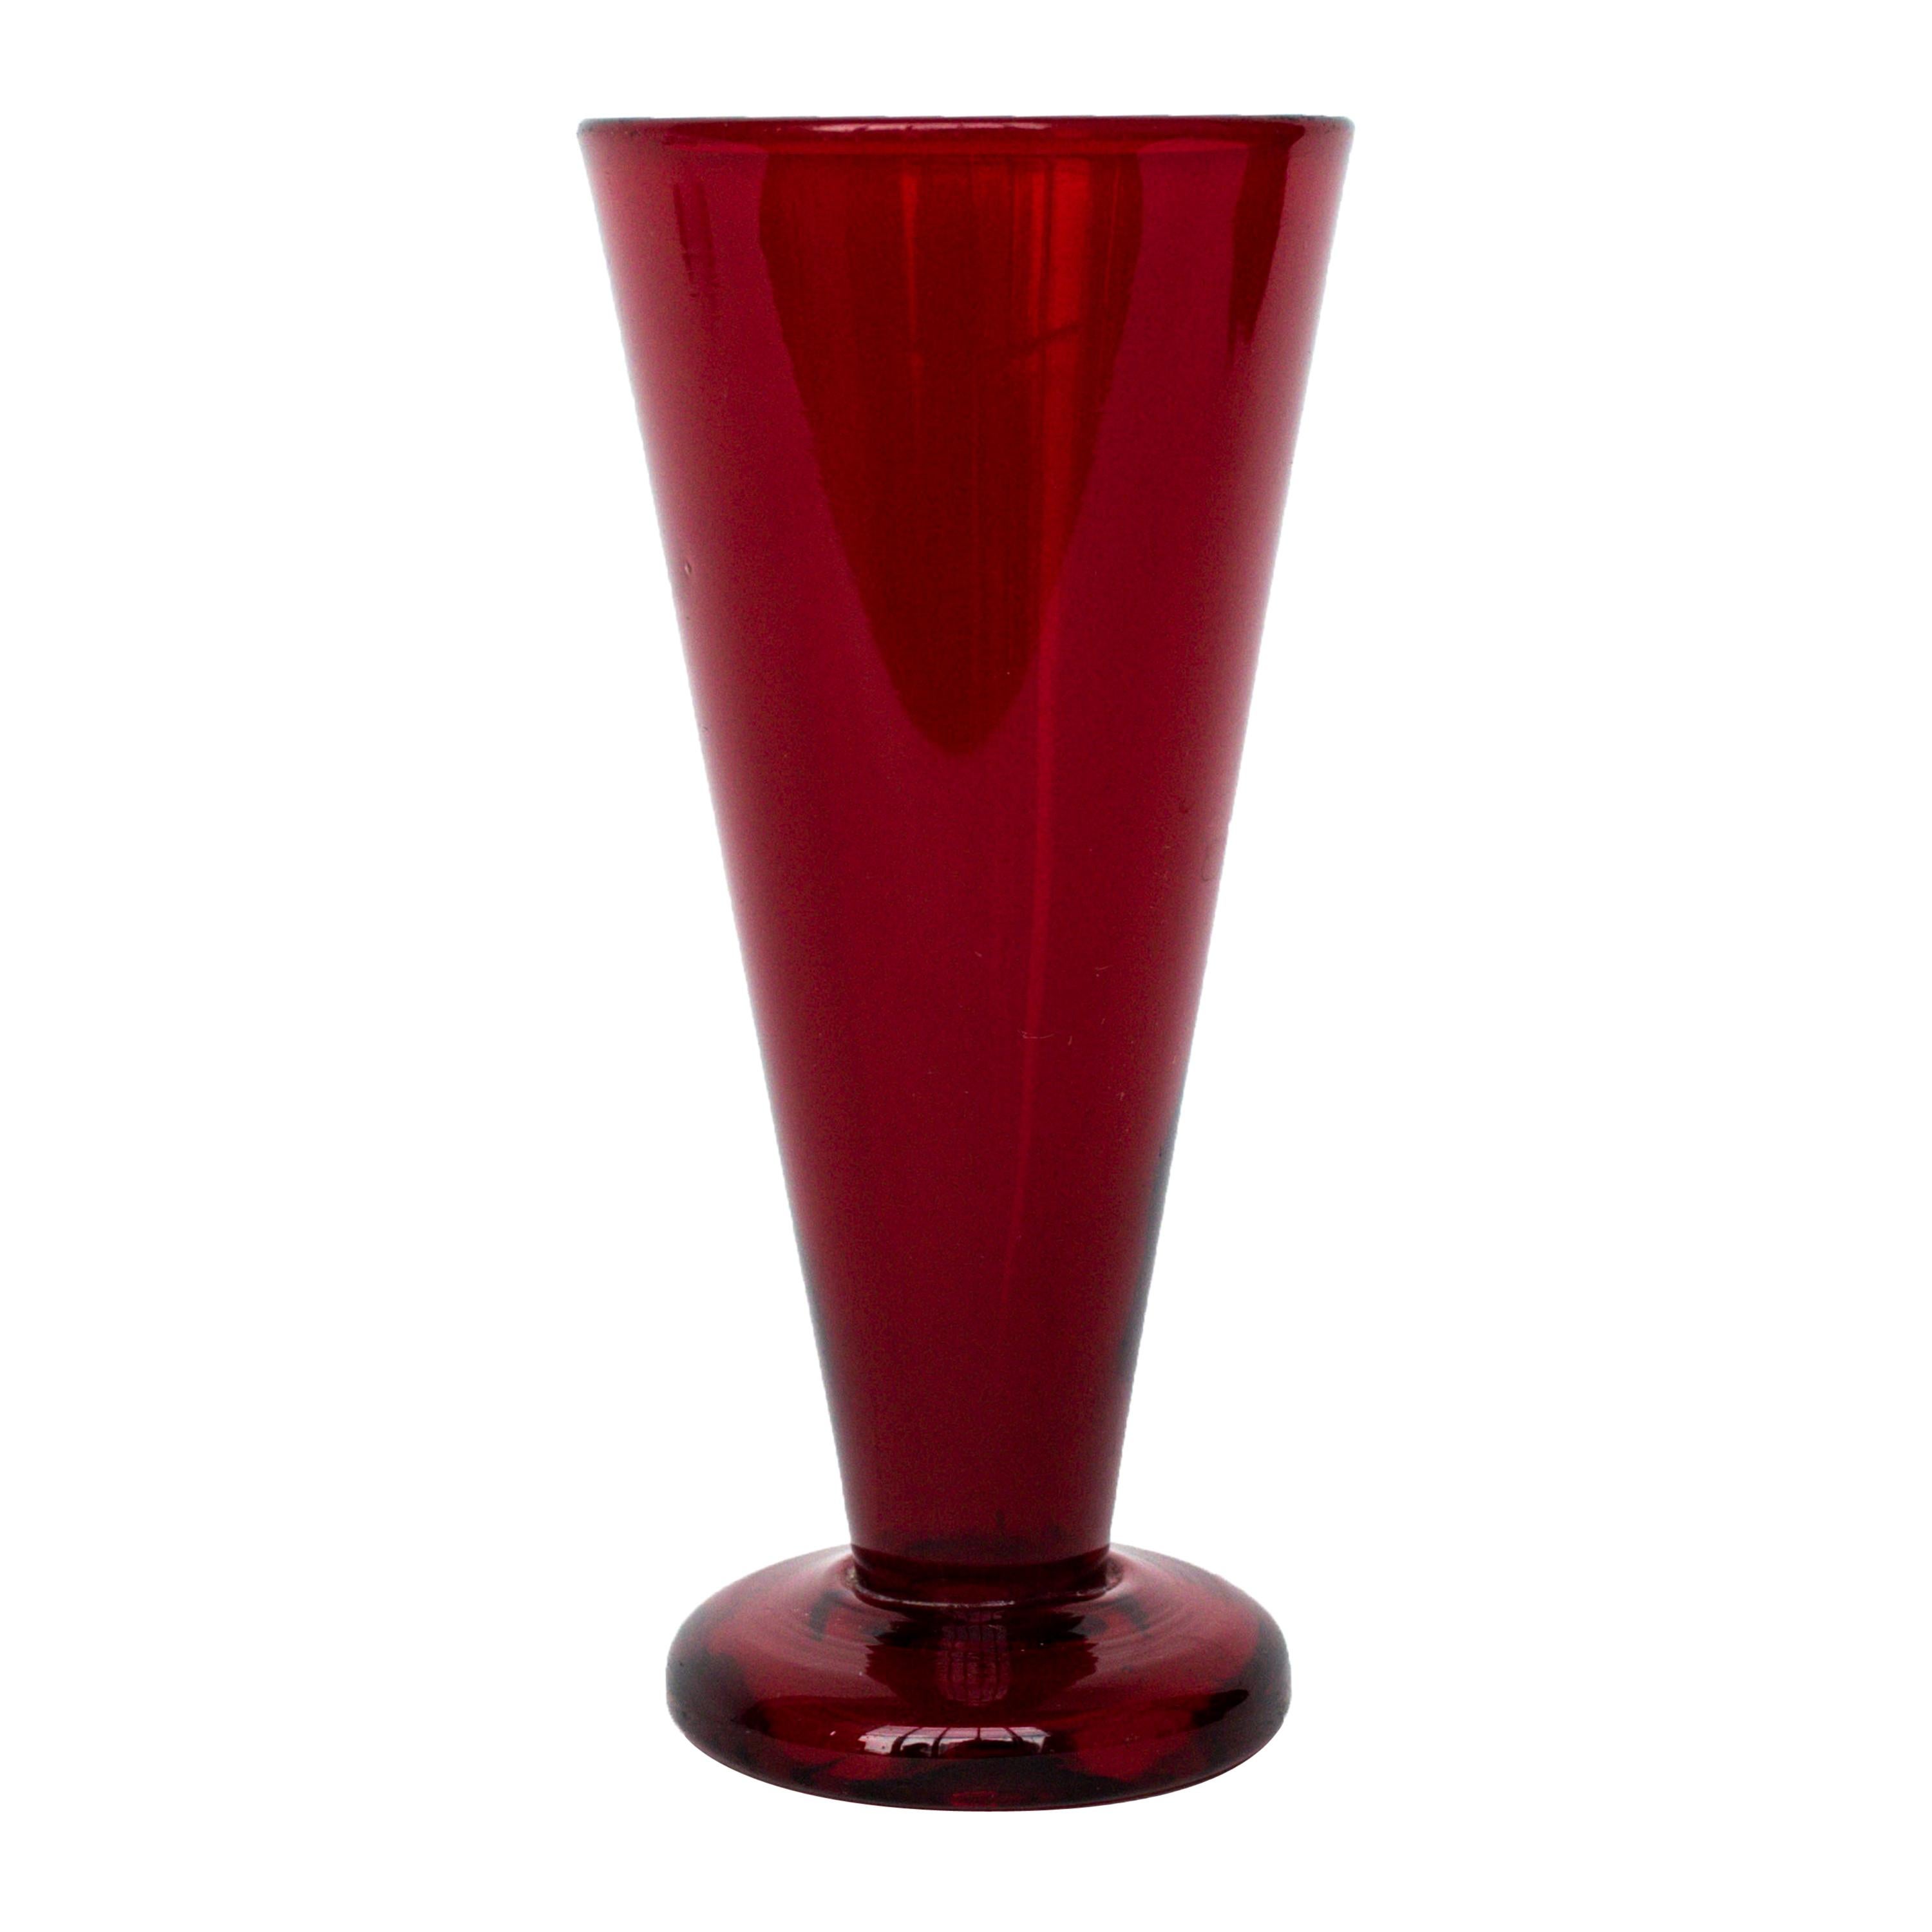 Reijmyre Glas/Vase in Red Glass Designed by Monica Bratt for Reijmyre For Sale